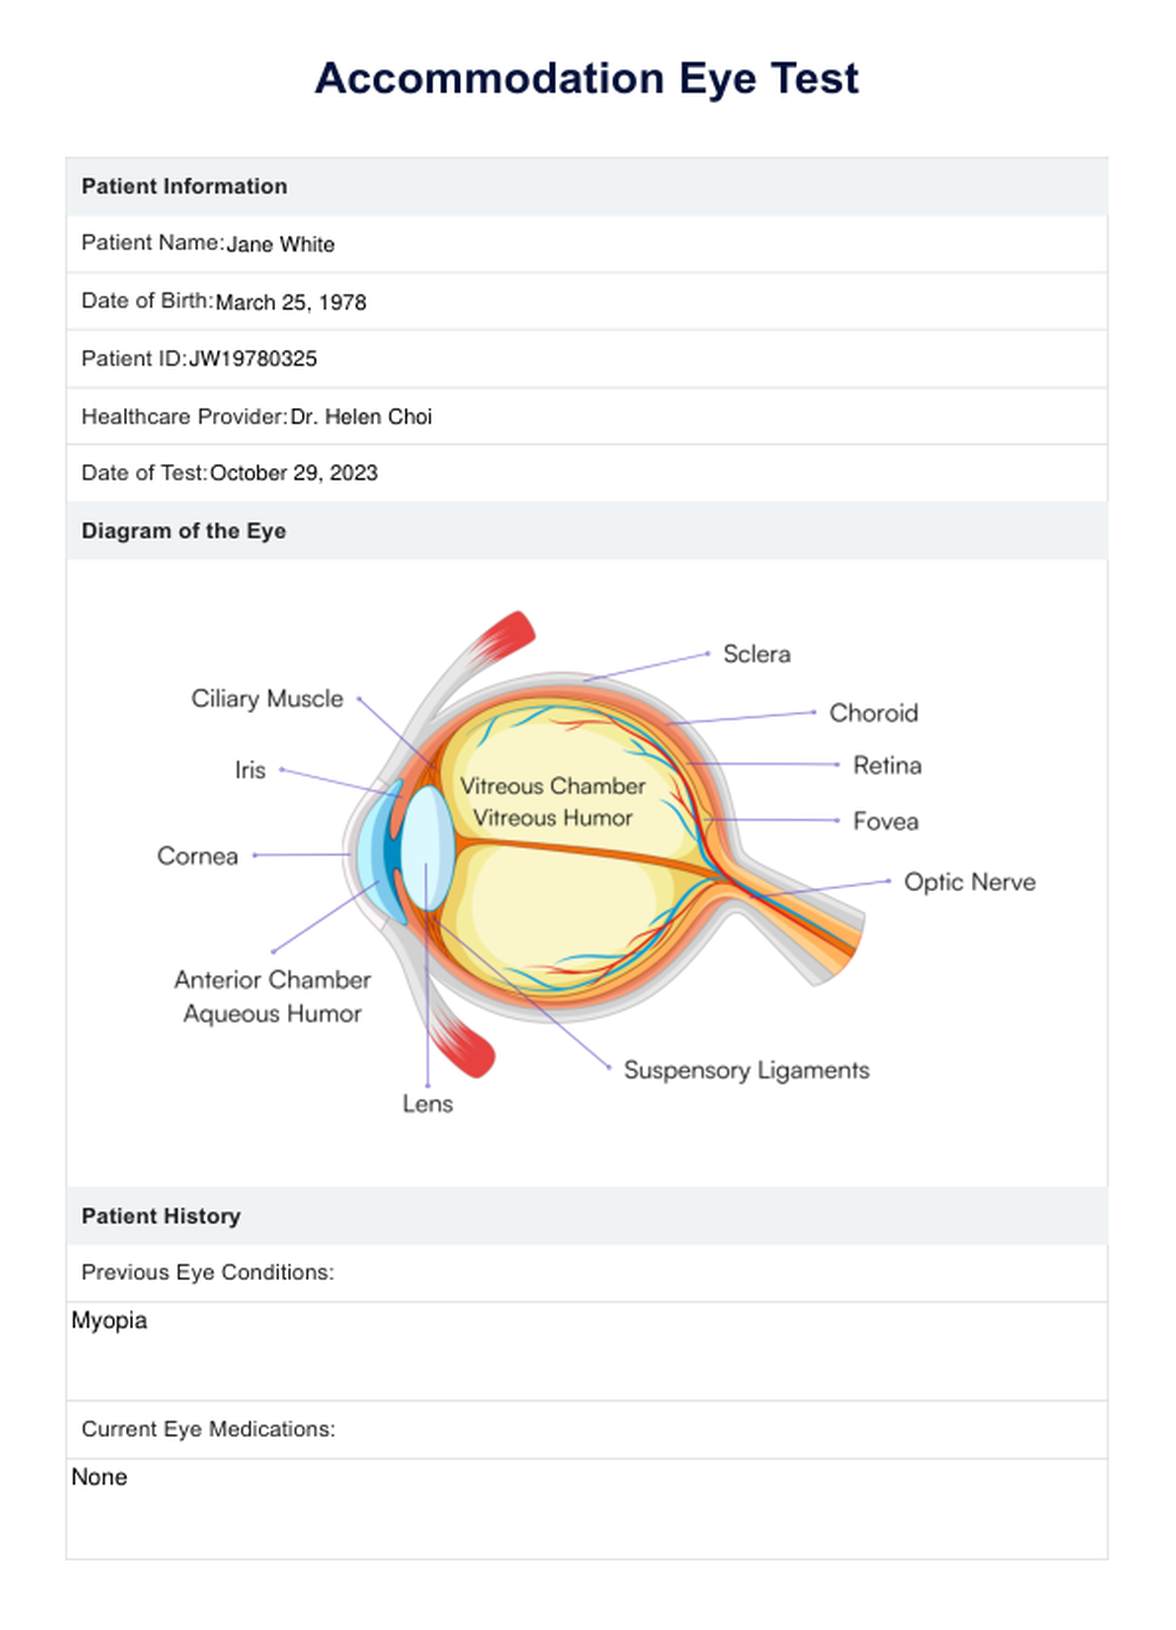 Accommodation Eye Test PDF Example